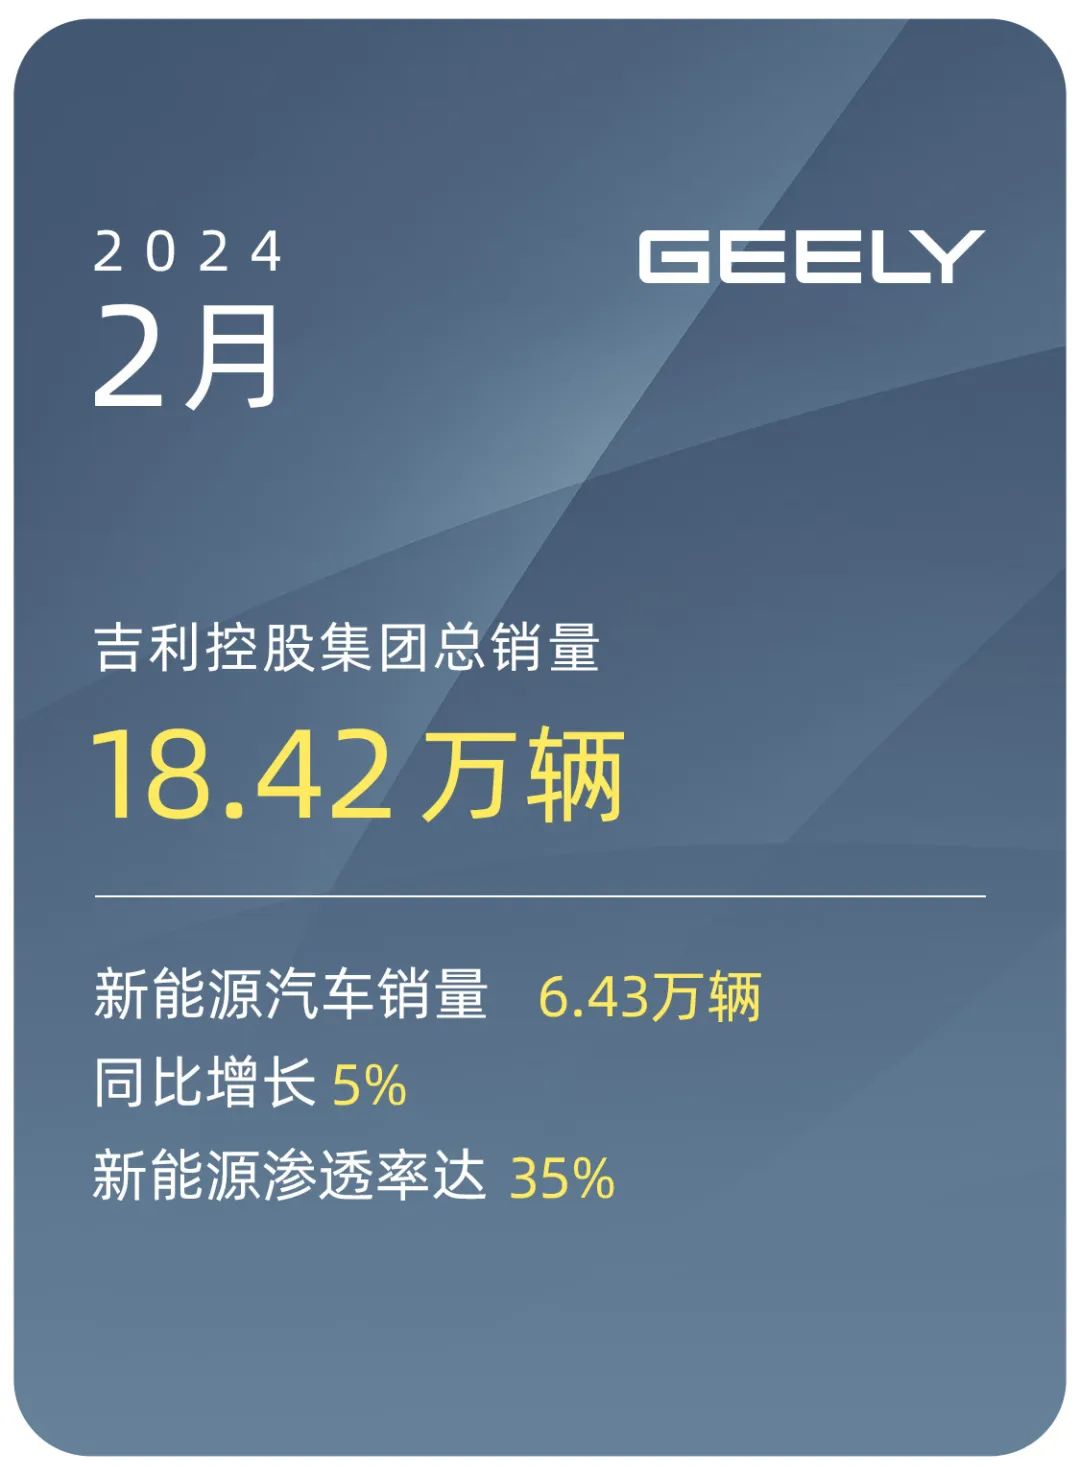 吉利控股集团2月总销量18.42万辆